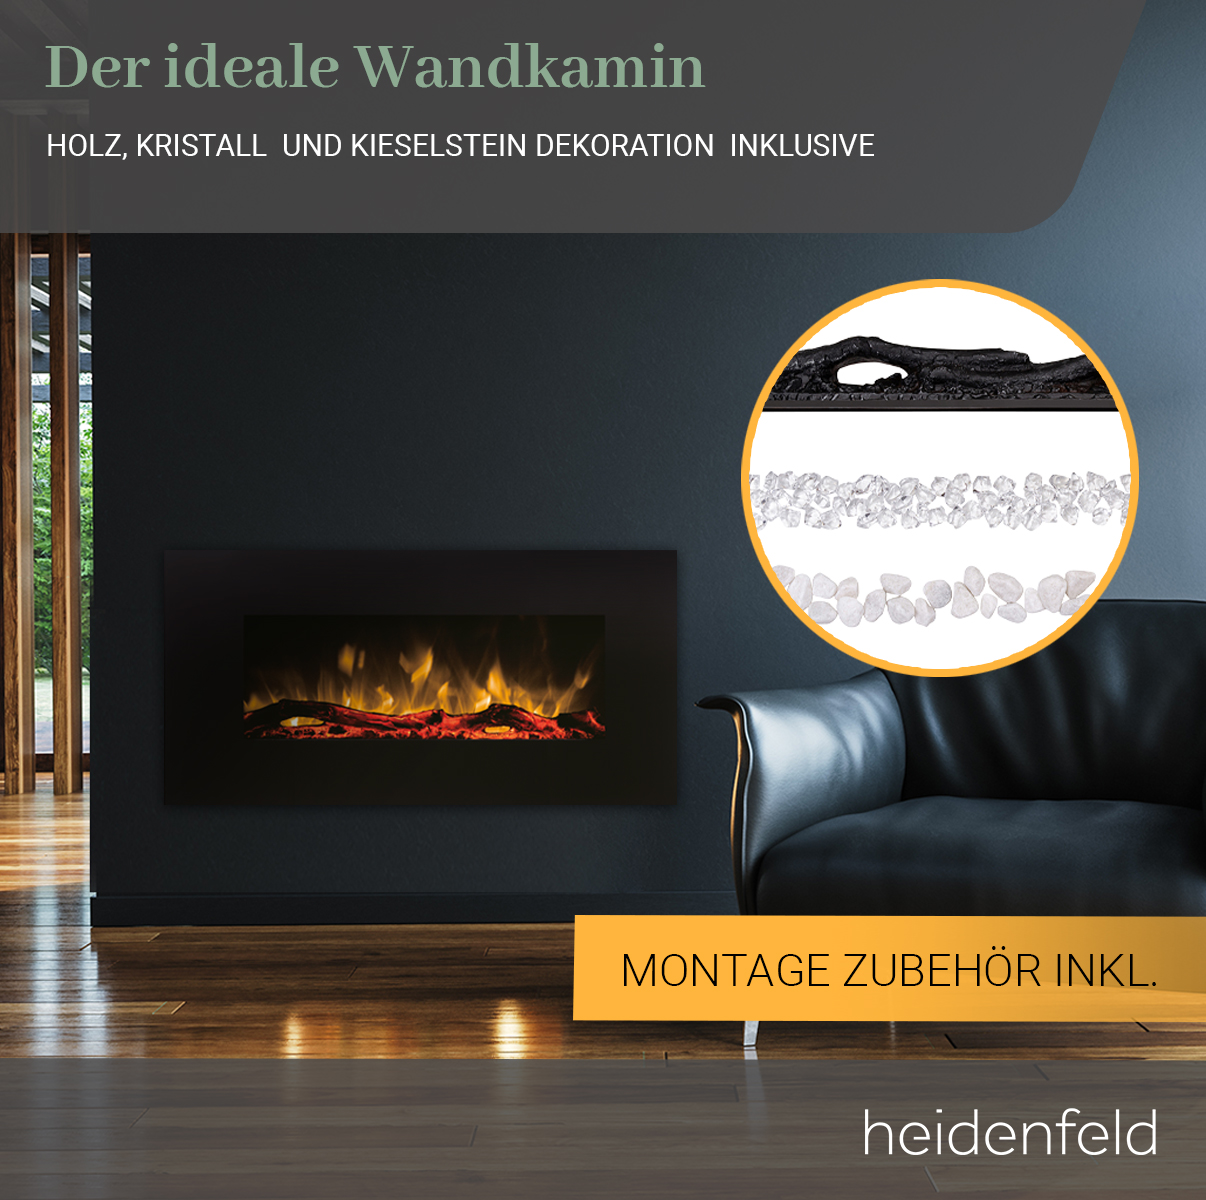 HEIDENFELD x Wandkamin 55.0 (1500 Elektrokamin Watt) 107.0 cm HF-WK300